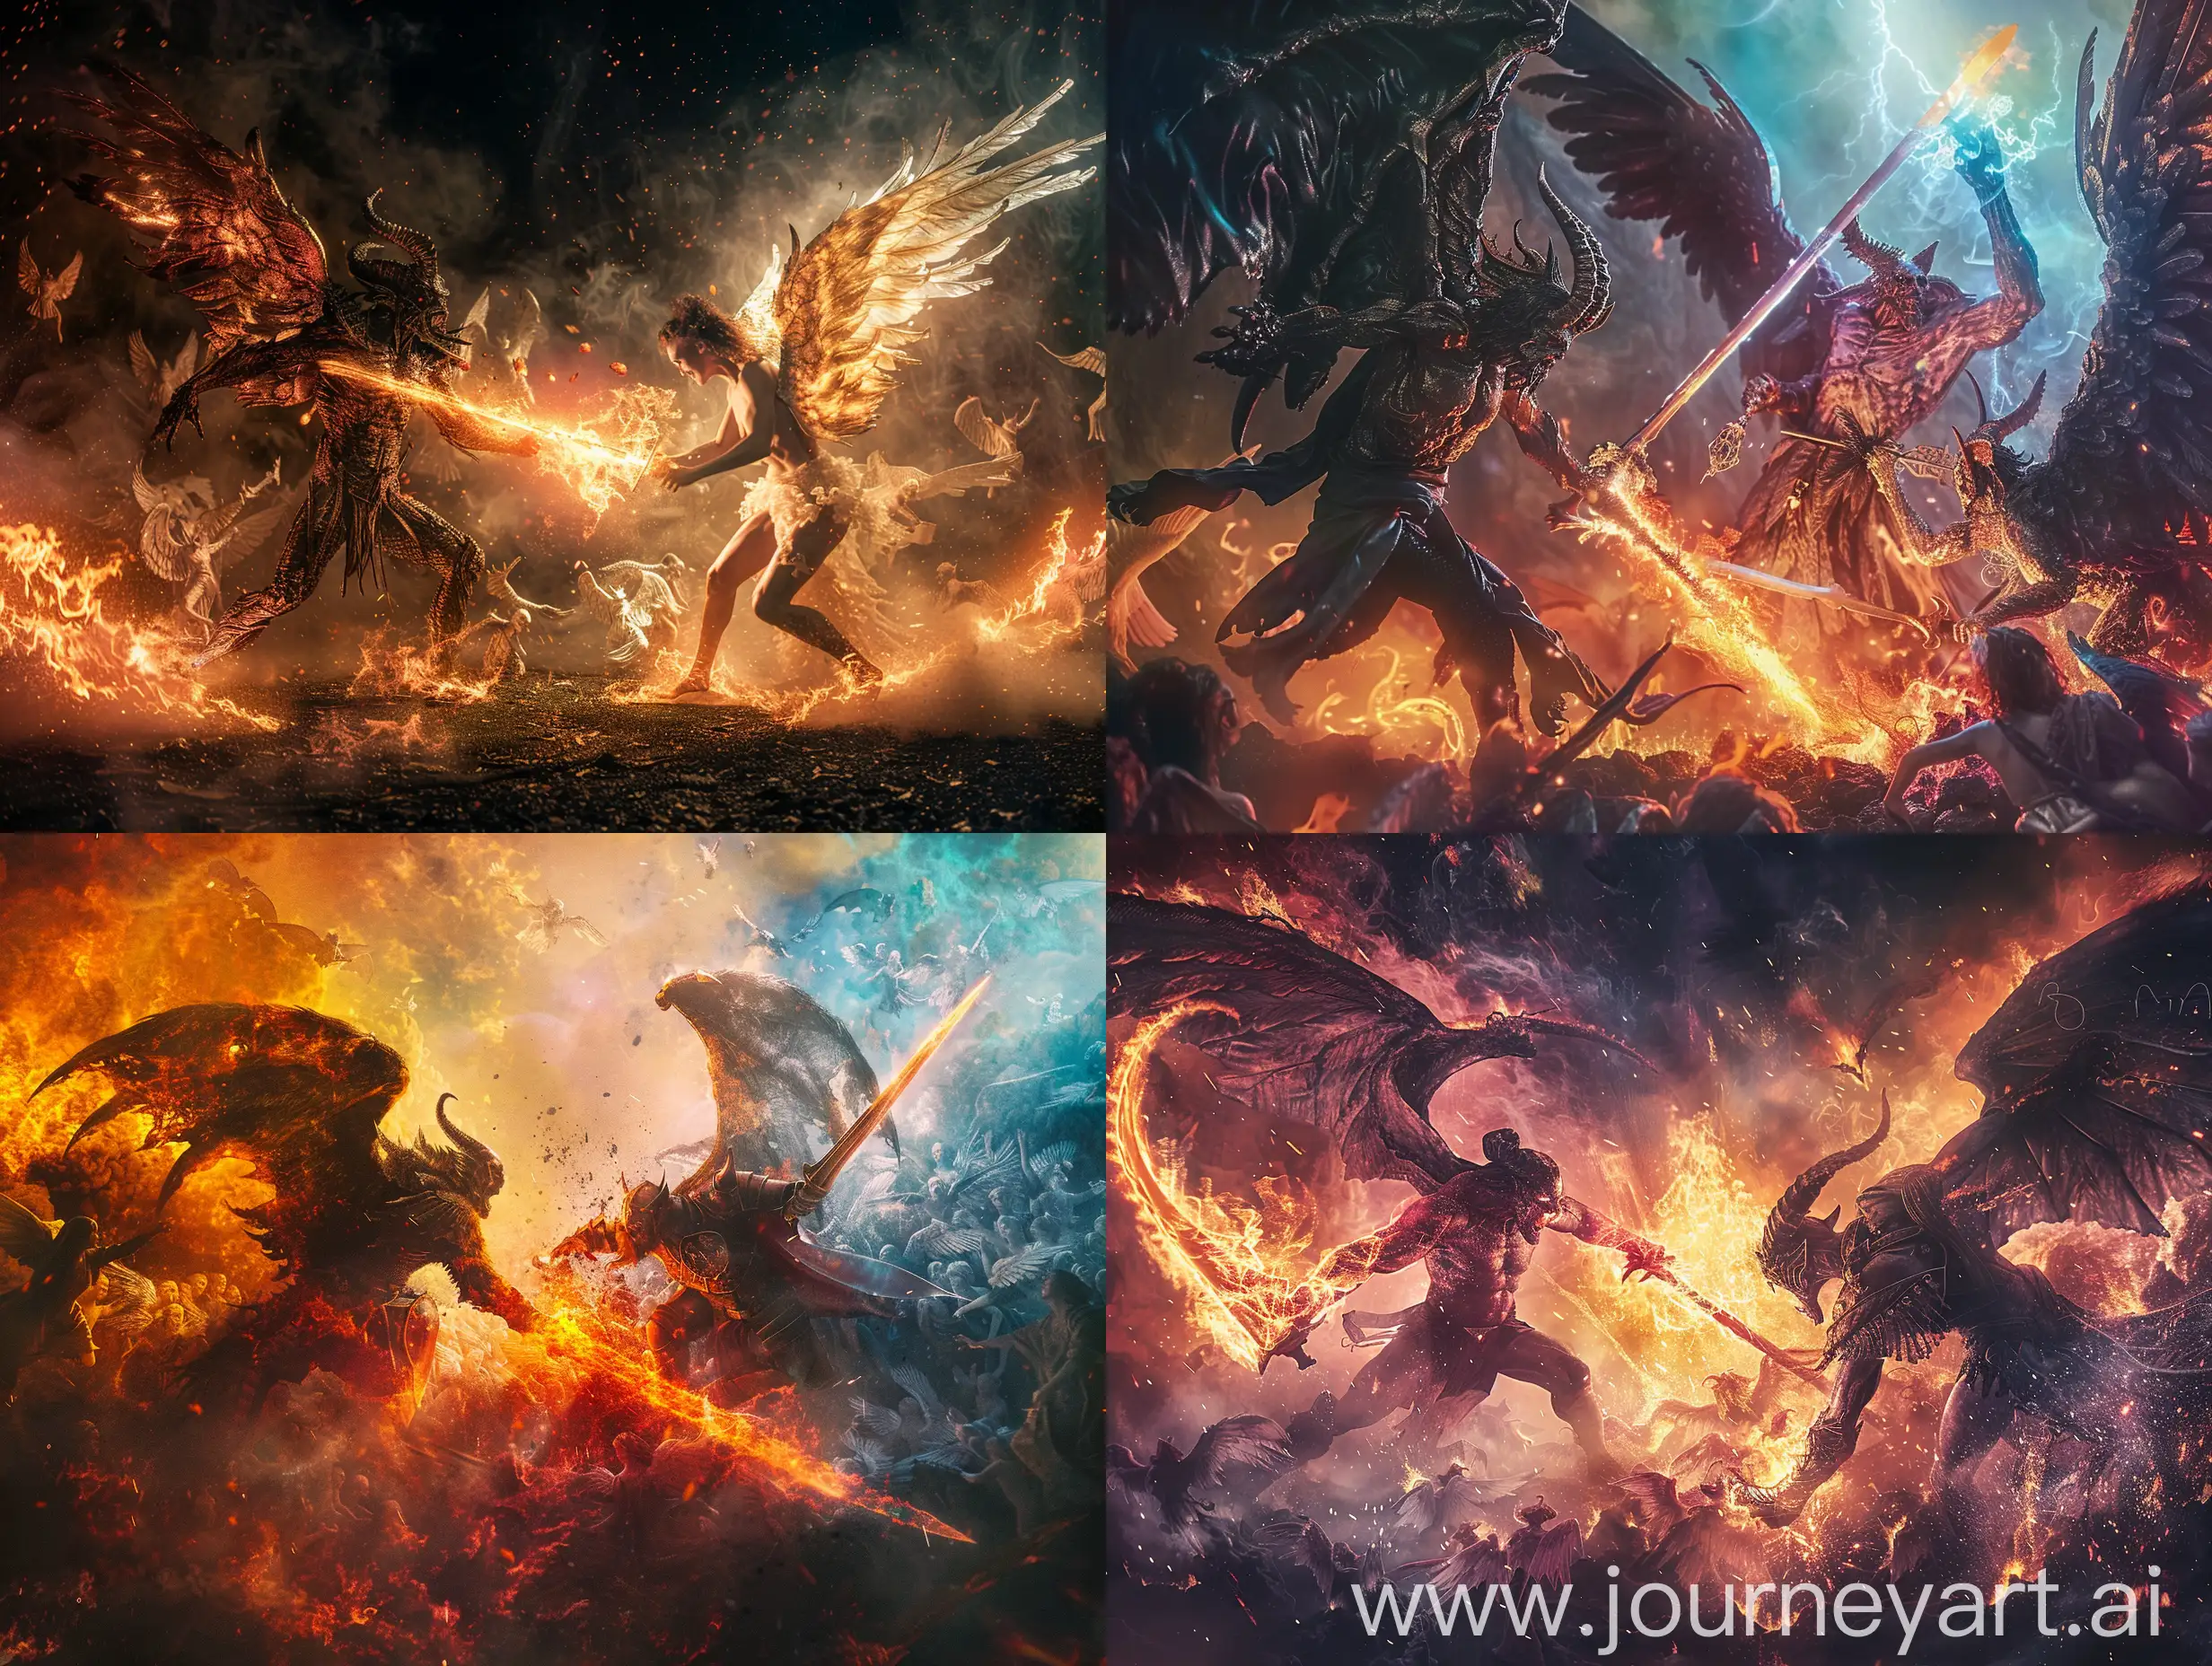 Epic-Battle-Satan-Wielding-Fiery-Sword-Against-Angelic-Army